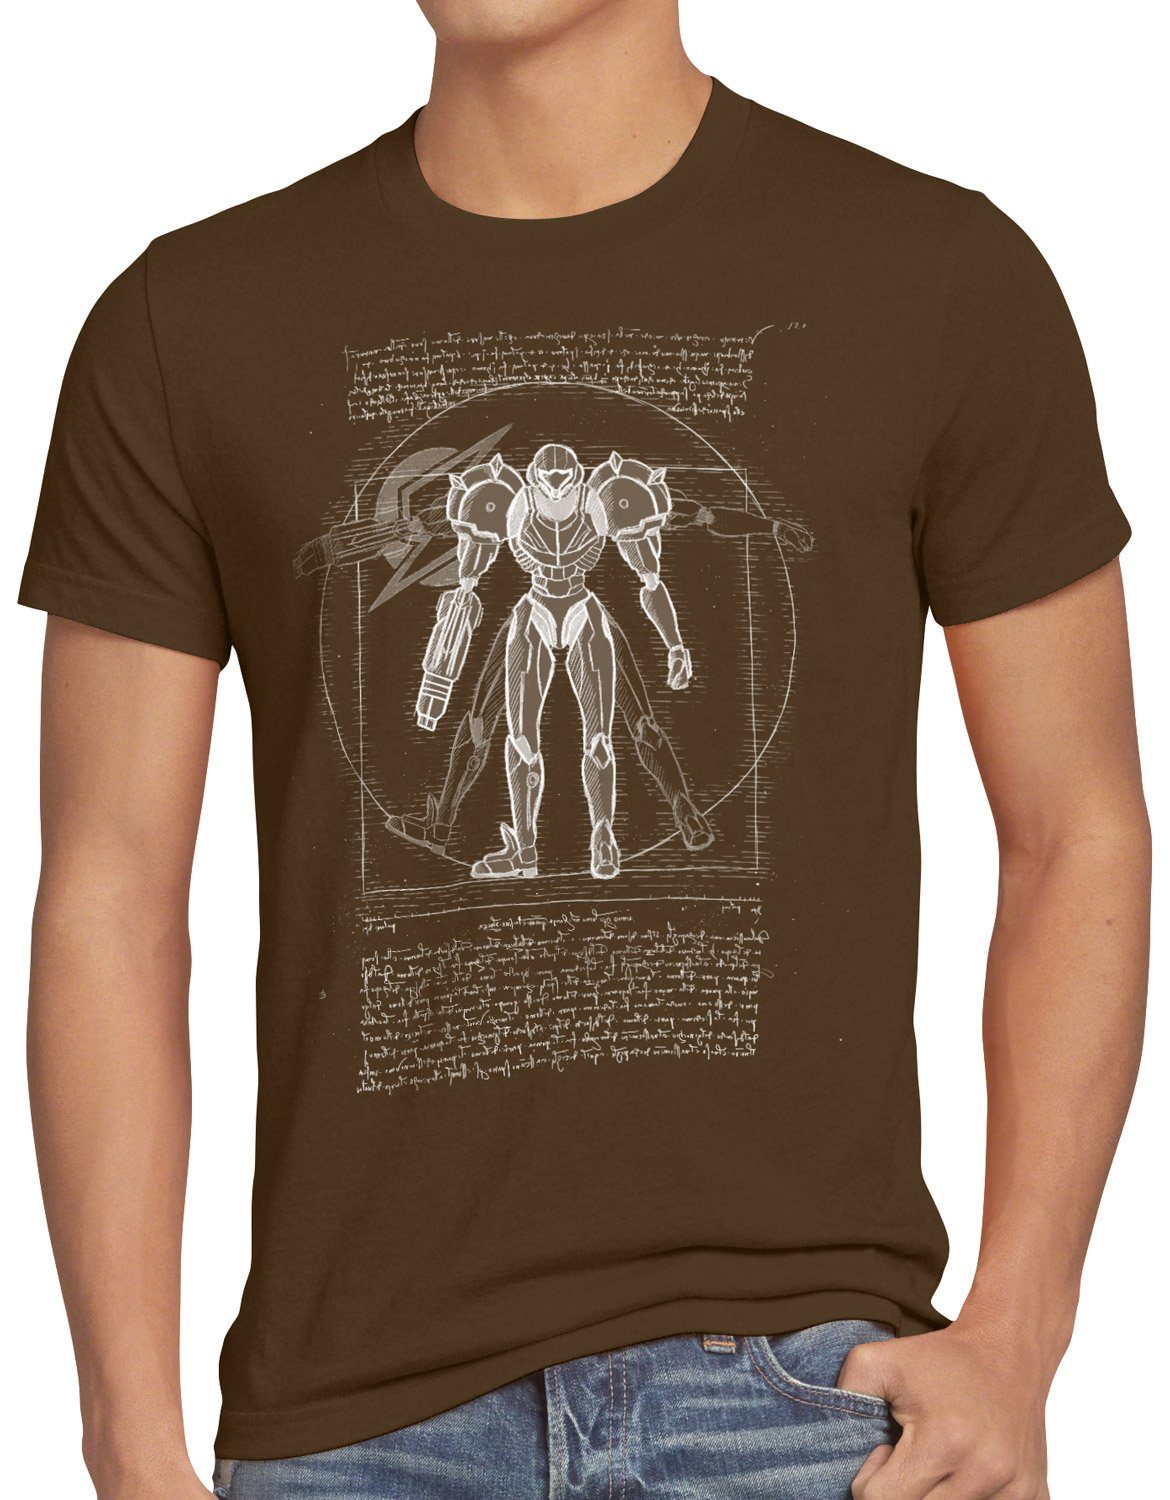 style3 Print-Shirt Herren T-Shirt Return gamer braun metroid Samus nes snes Vitruvianische nerd